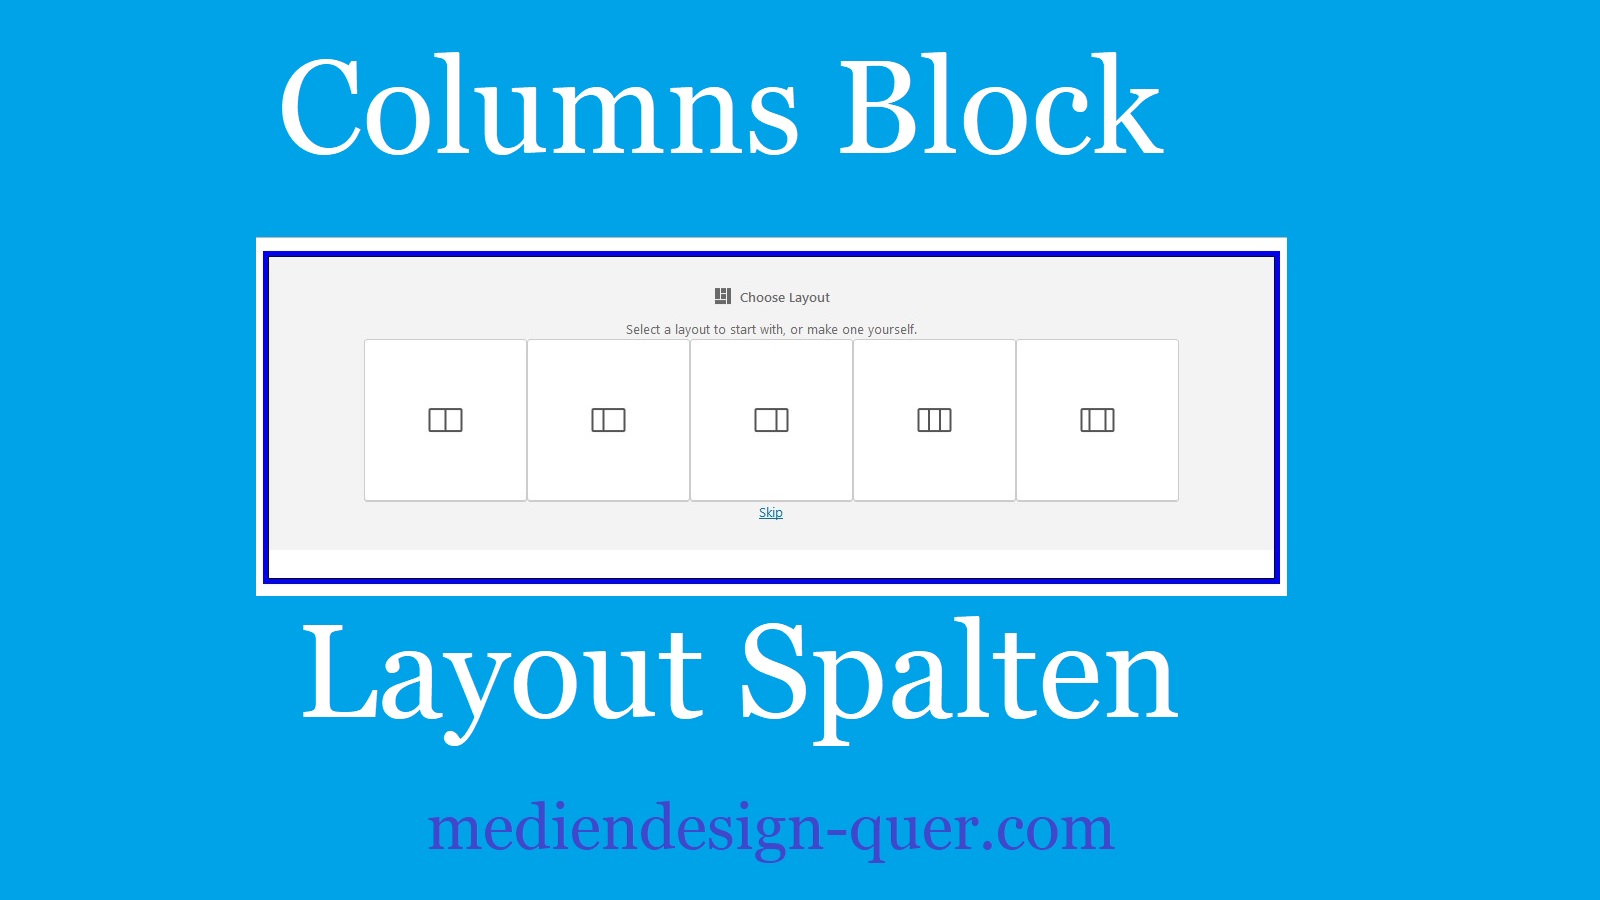 Vordefinierte Layouts im Columns Block – WordPress Gutenberg 6.0